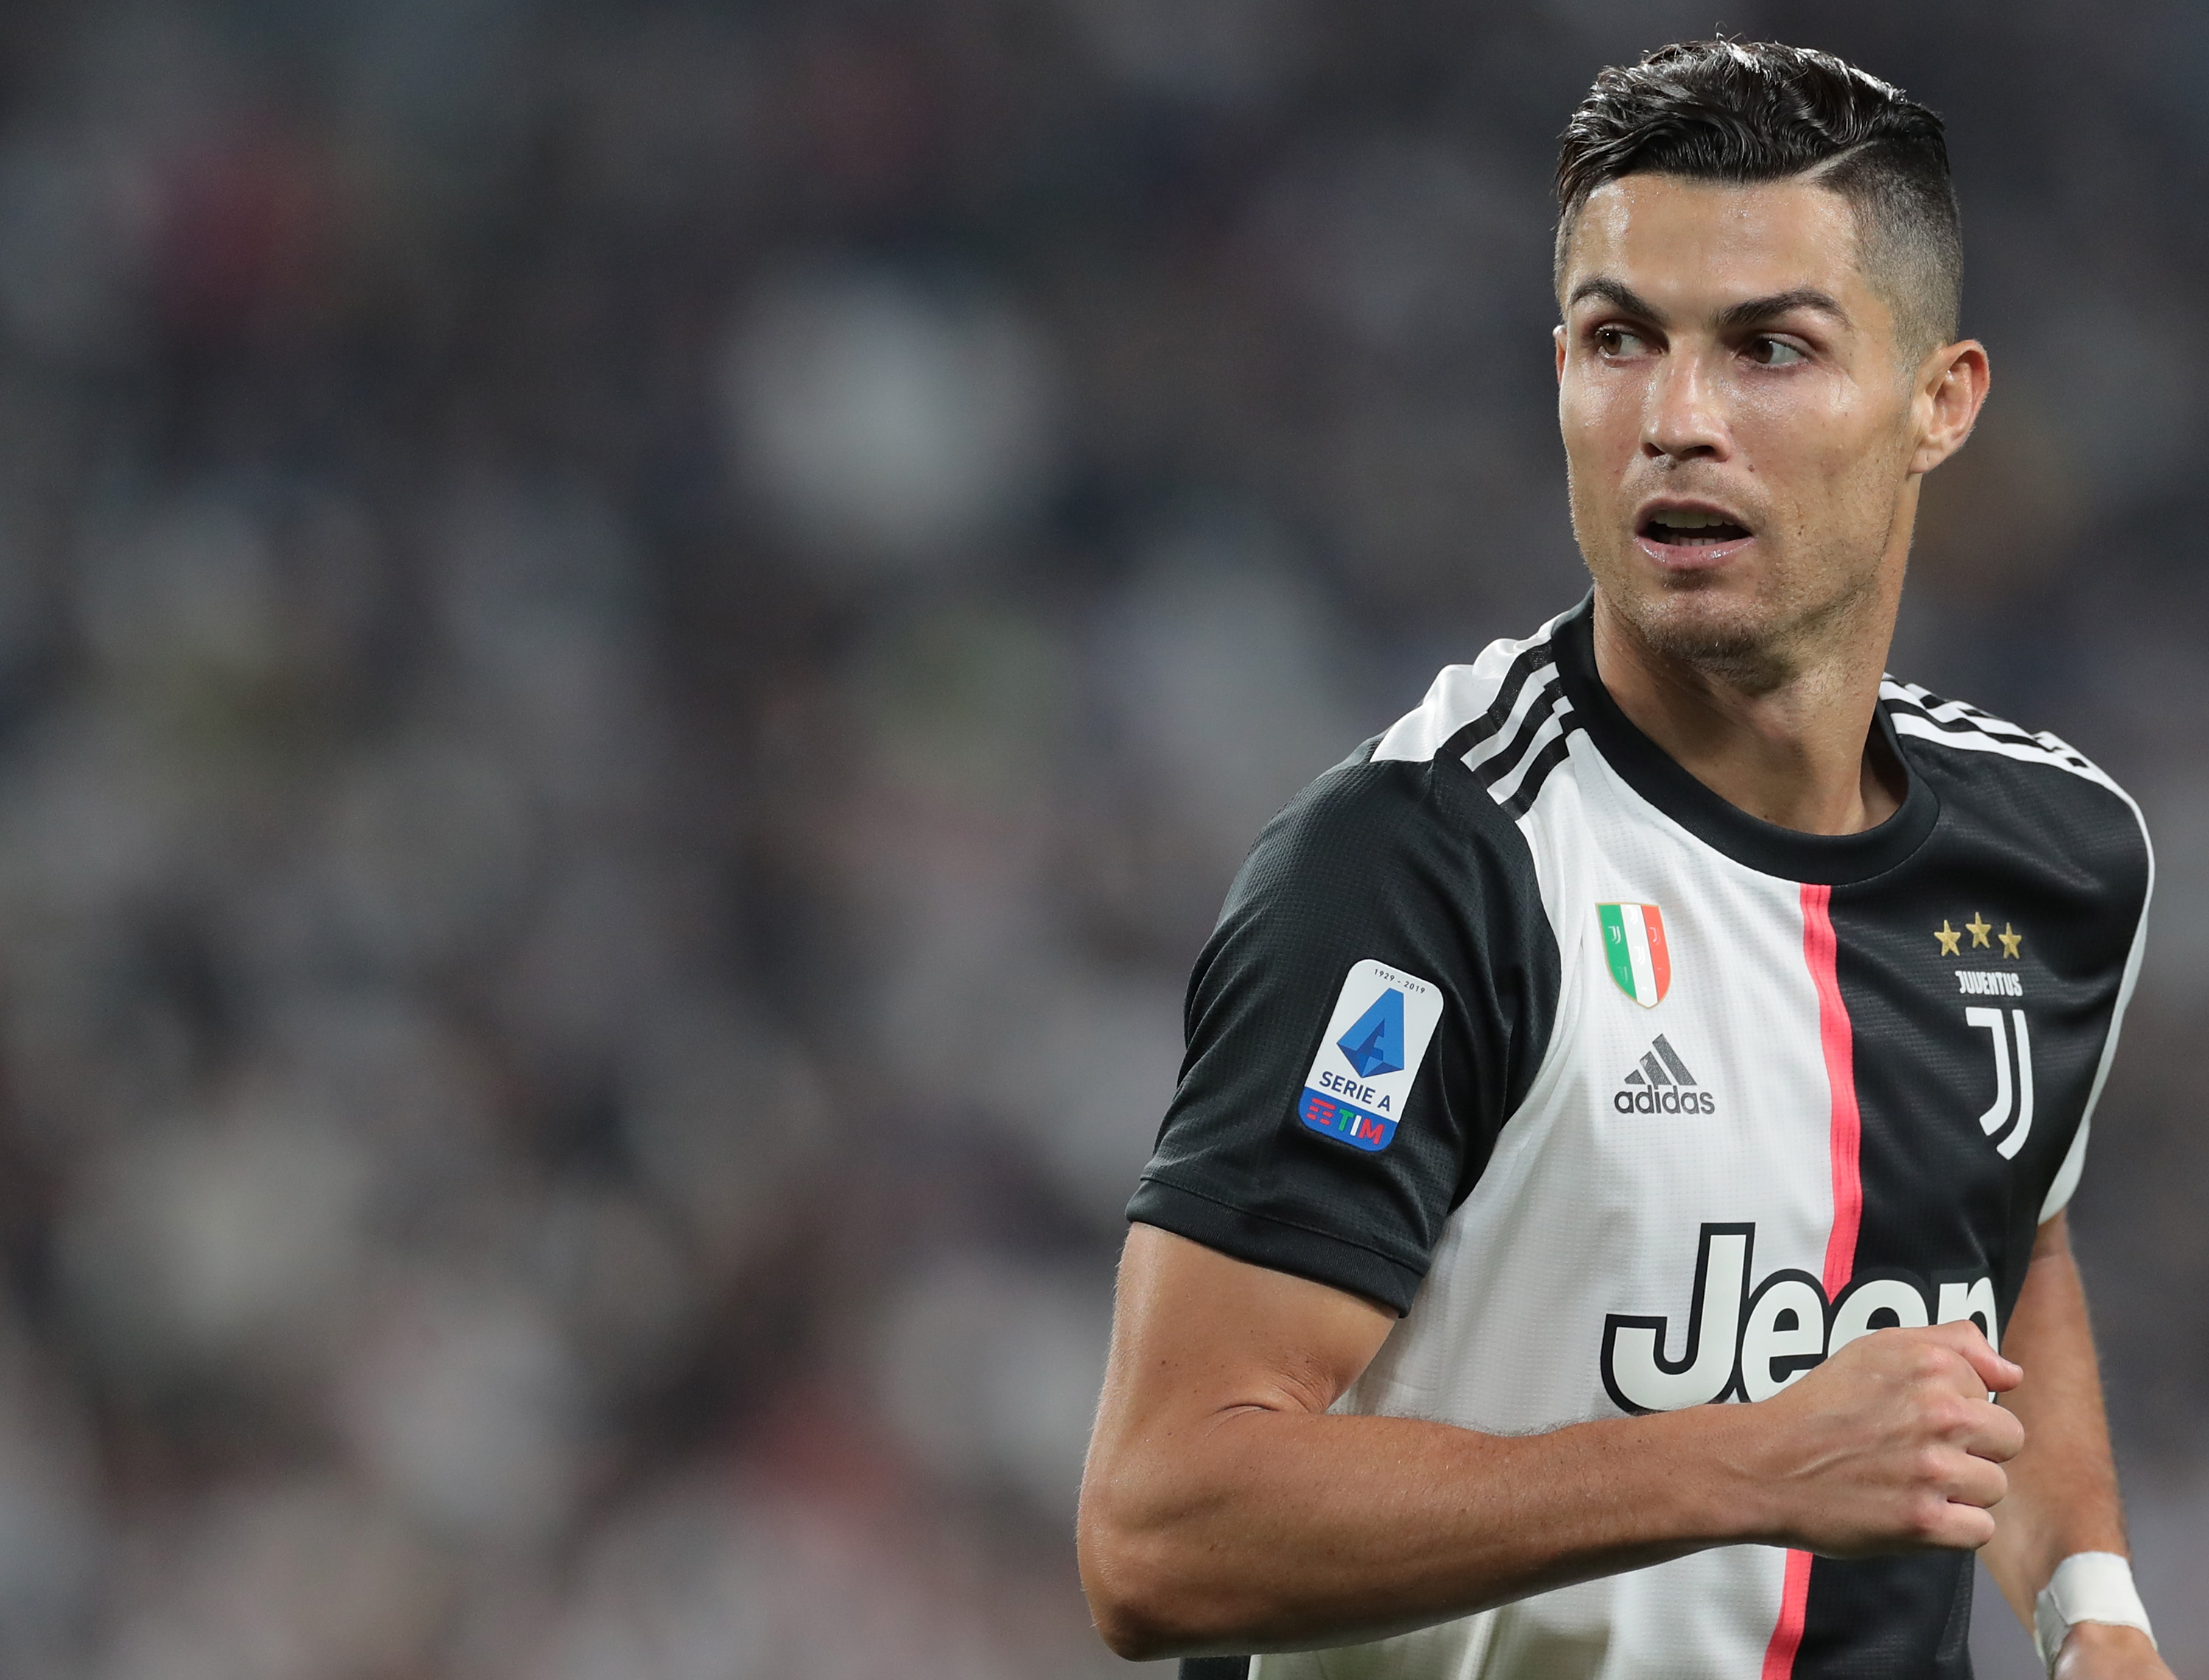 Ronaldo rompe il silenzio: “Partita difficile, vittoria importante”